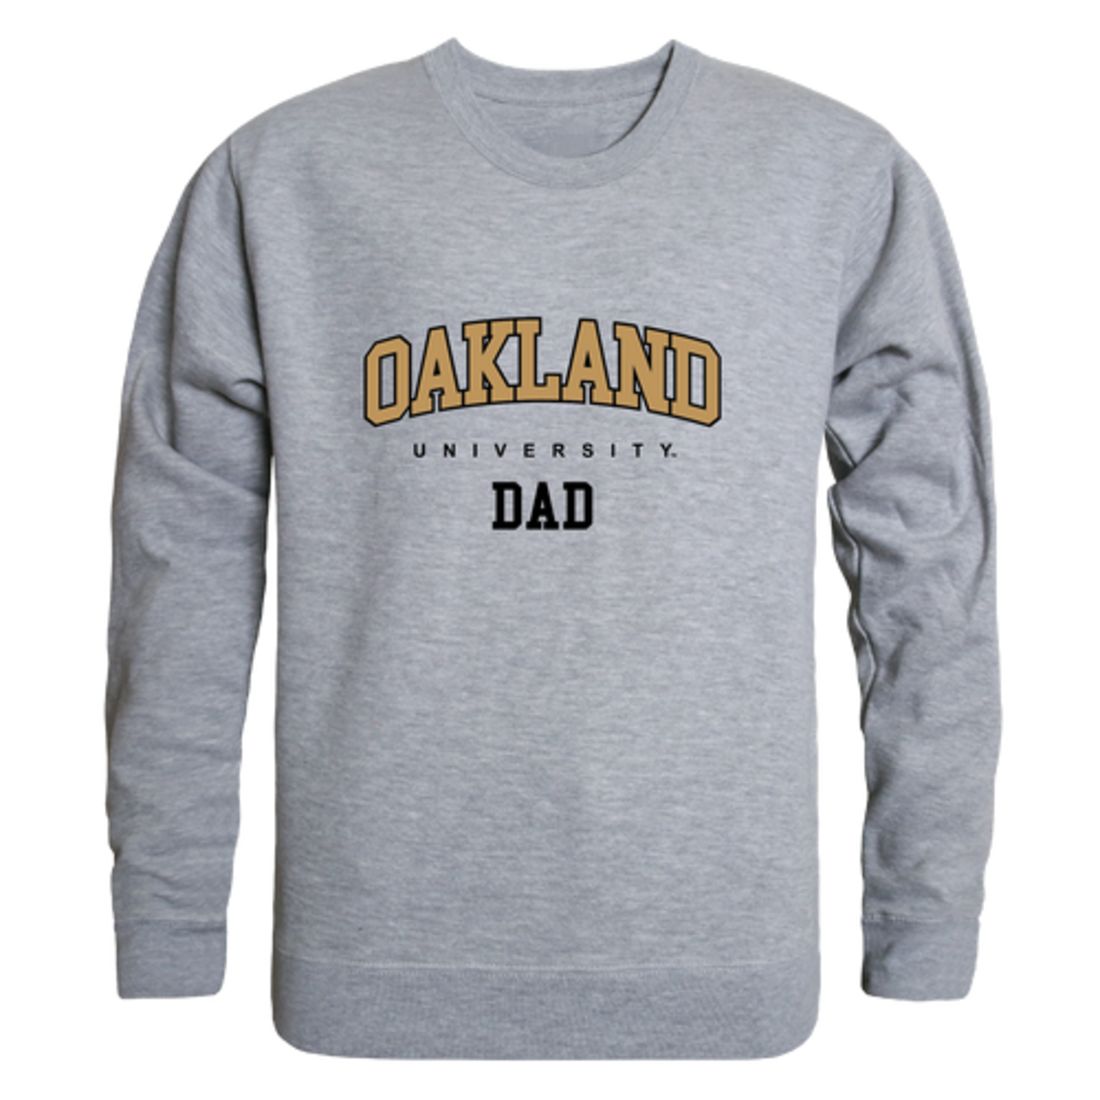 Oakland Golden Grizzlies Dad Fleece Crewneck Pullover Sweatshirt